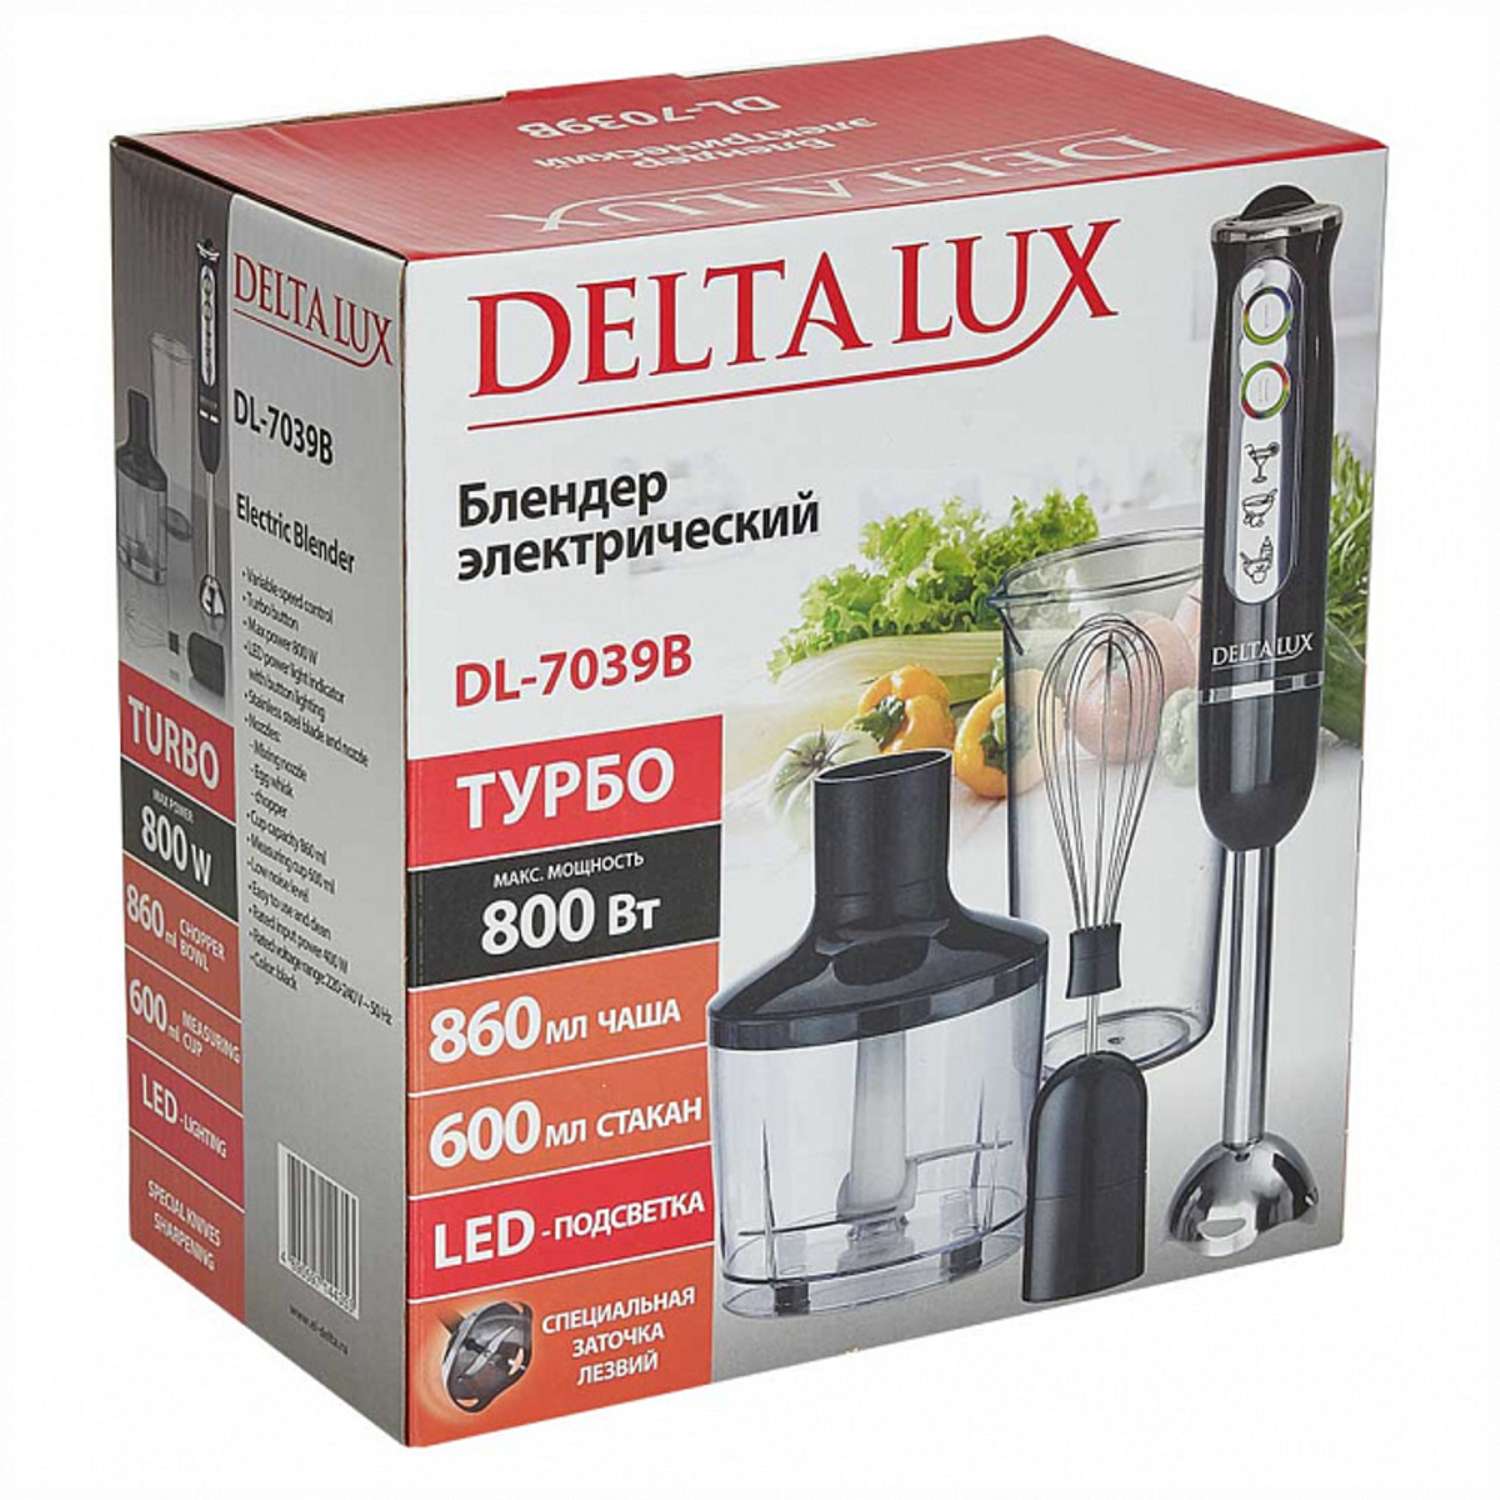 Блендер Delta Lux DL-7039B черный 800Вт Турбо стакан венчик измельчитель - фото 8